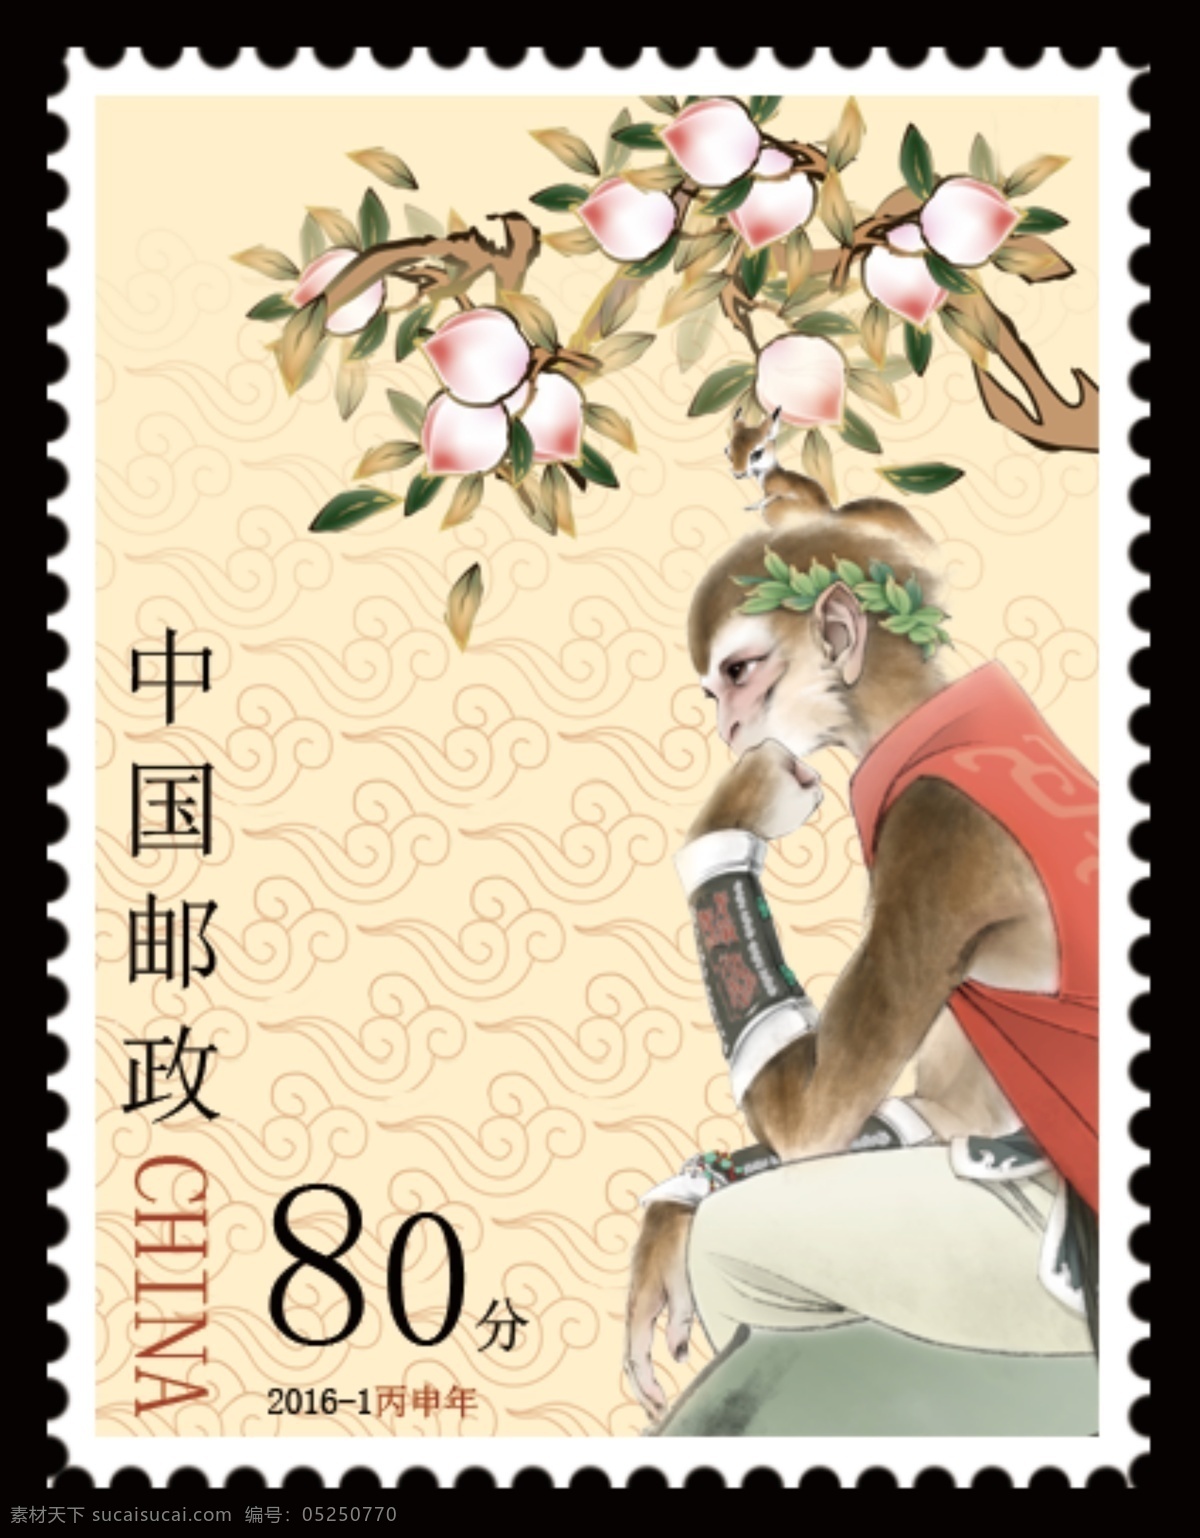 猴年邮票 美猴王 邮票 猴年 白色